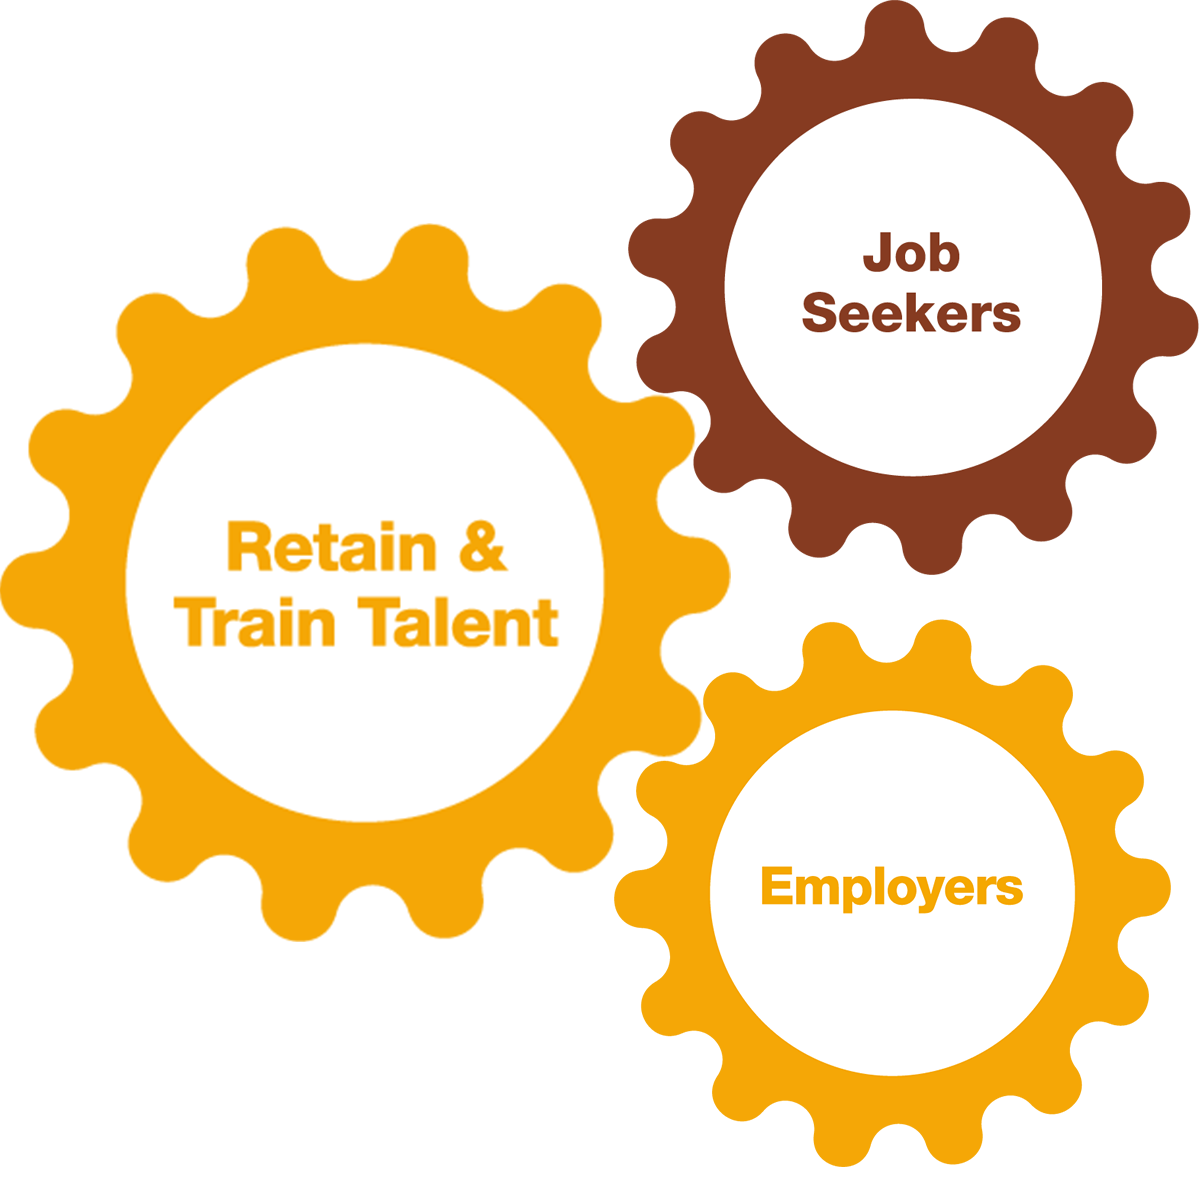 Employers & JobSeekers/Retain & Train Talent Gears